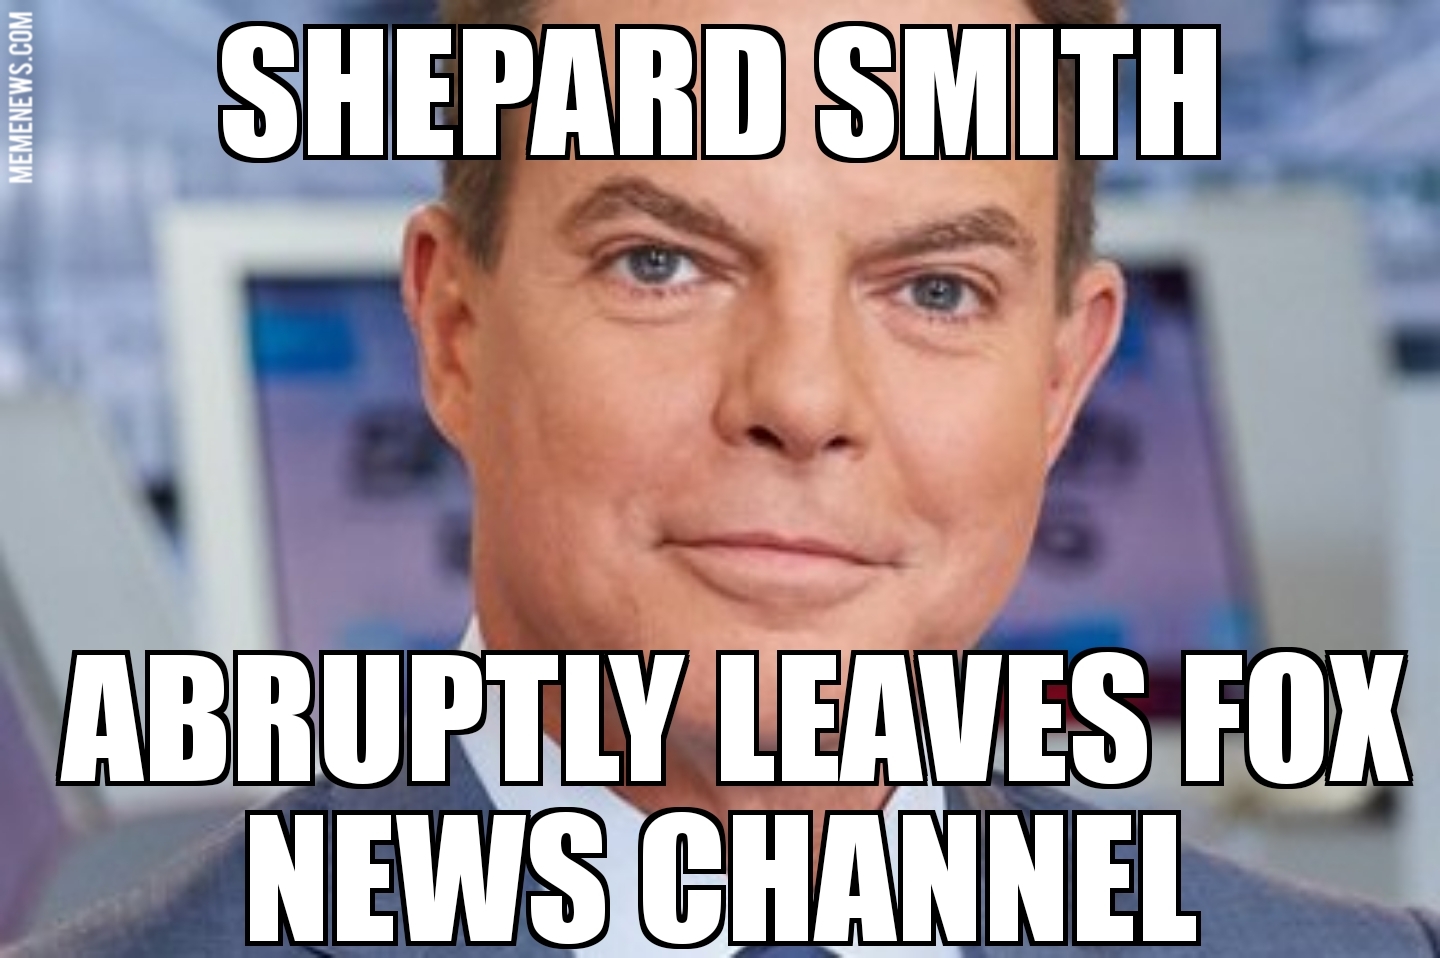 Shepard Smith leaves Fox News